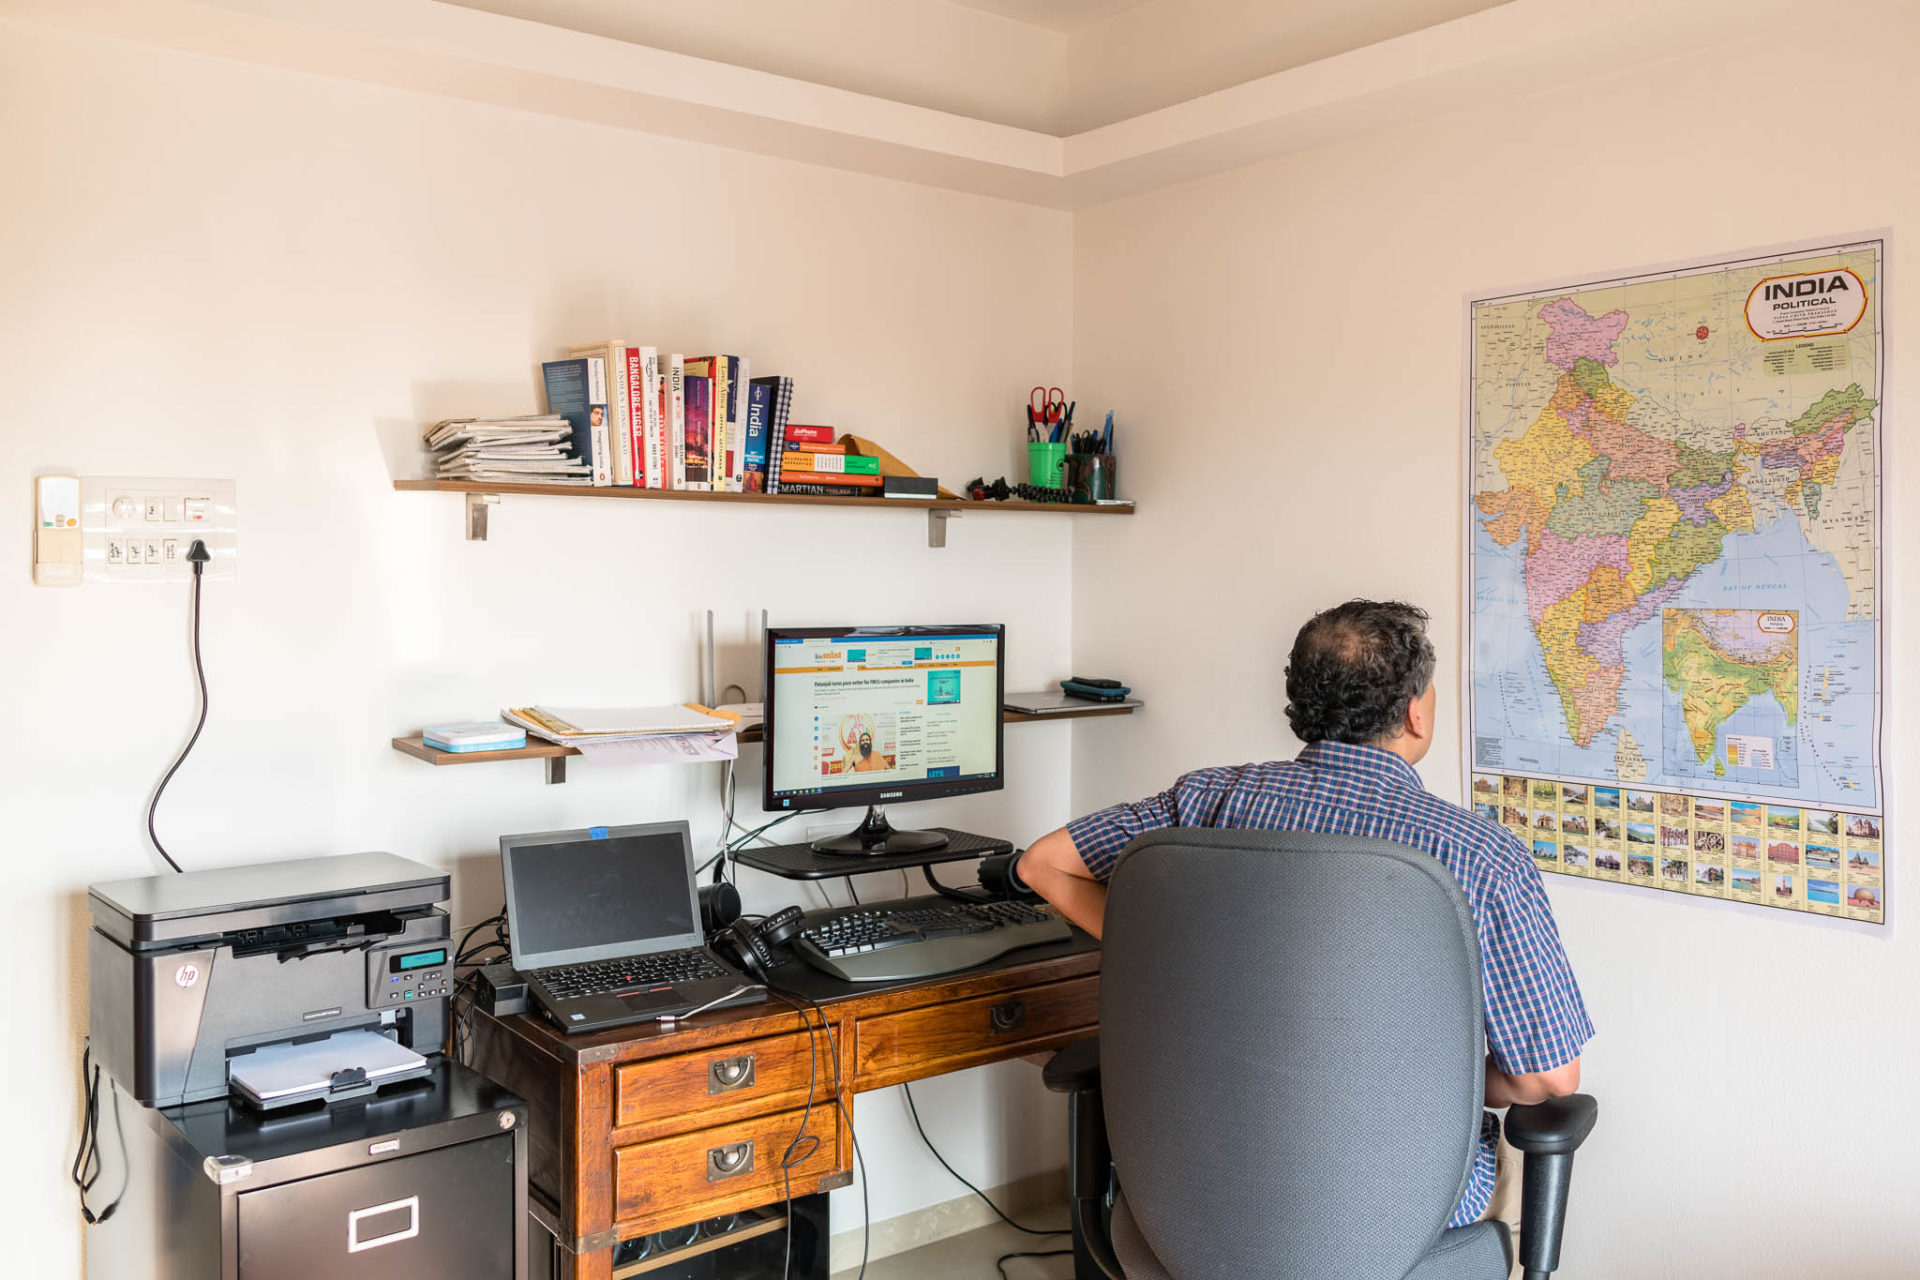 Vindu Goel at his home office in Mumbai